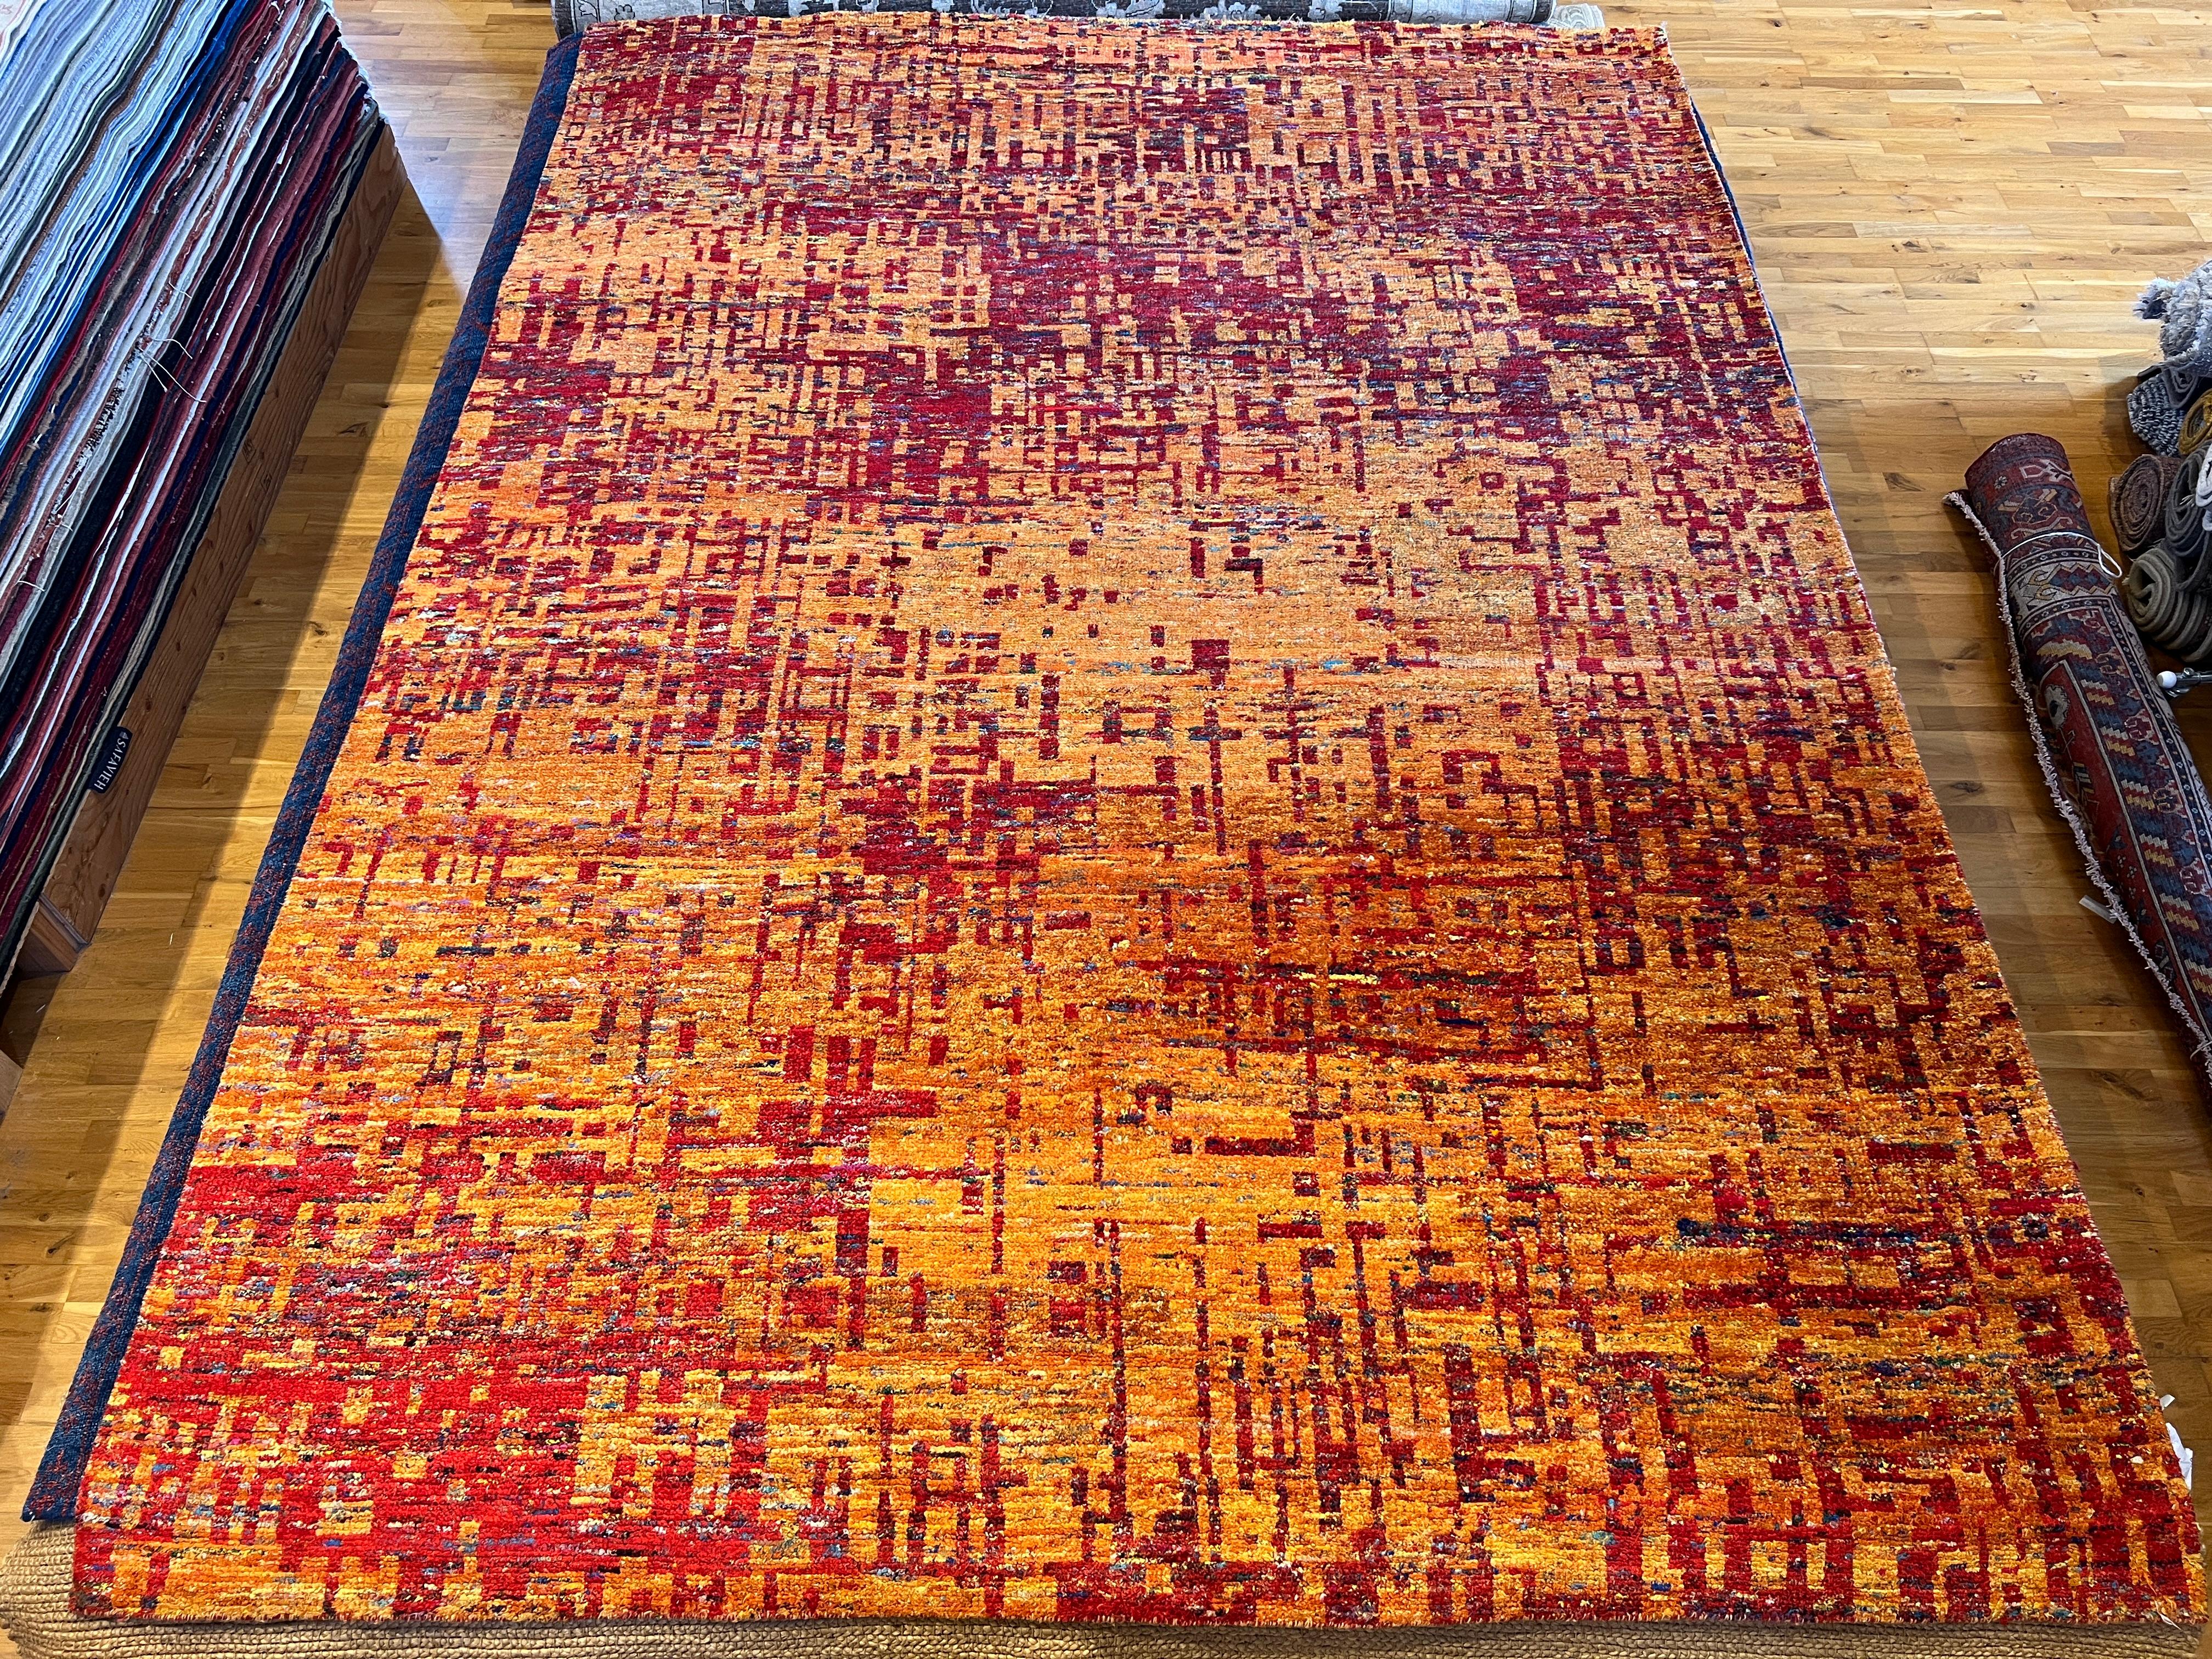 Ajoutez une touche de couleur à votre espace de vie avec notre tapis Abstract Grunge Design 9'x12'. Les tons chauds de rouge et d'orange créent un look vibrant et moderne, tandis que le design abstrait ajoute une touche d'unicité. Fabriqué avec des